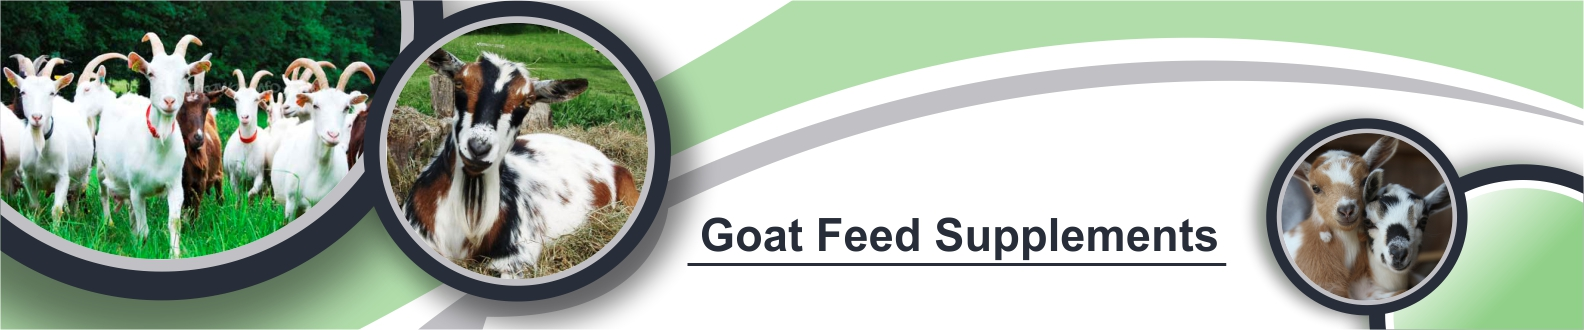 goat-banner-image